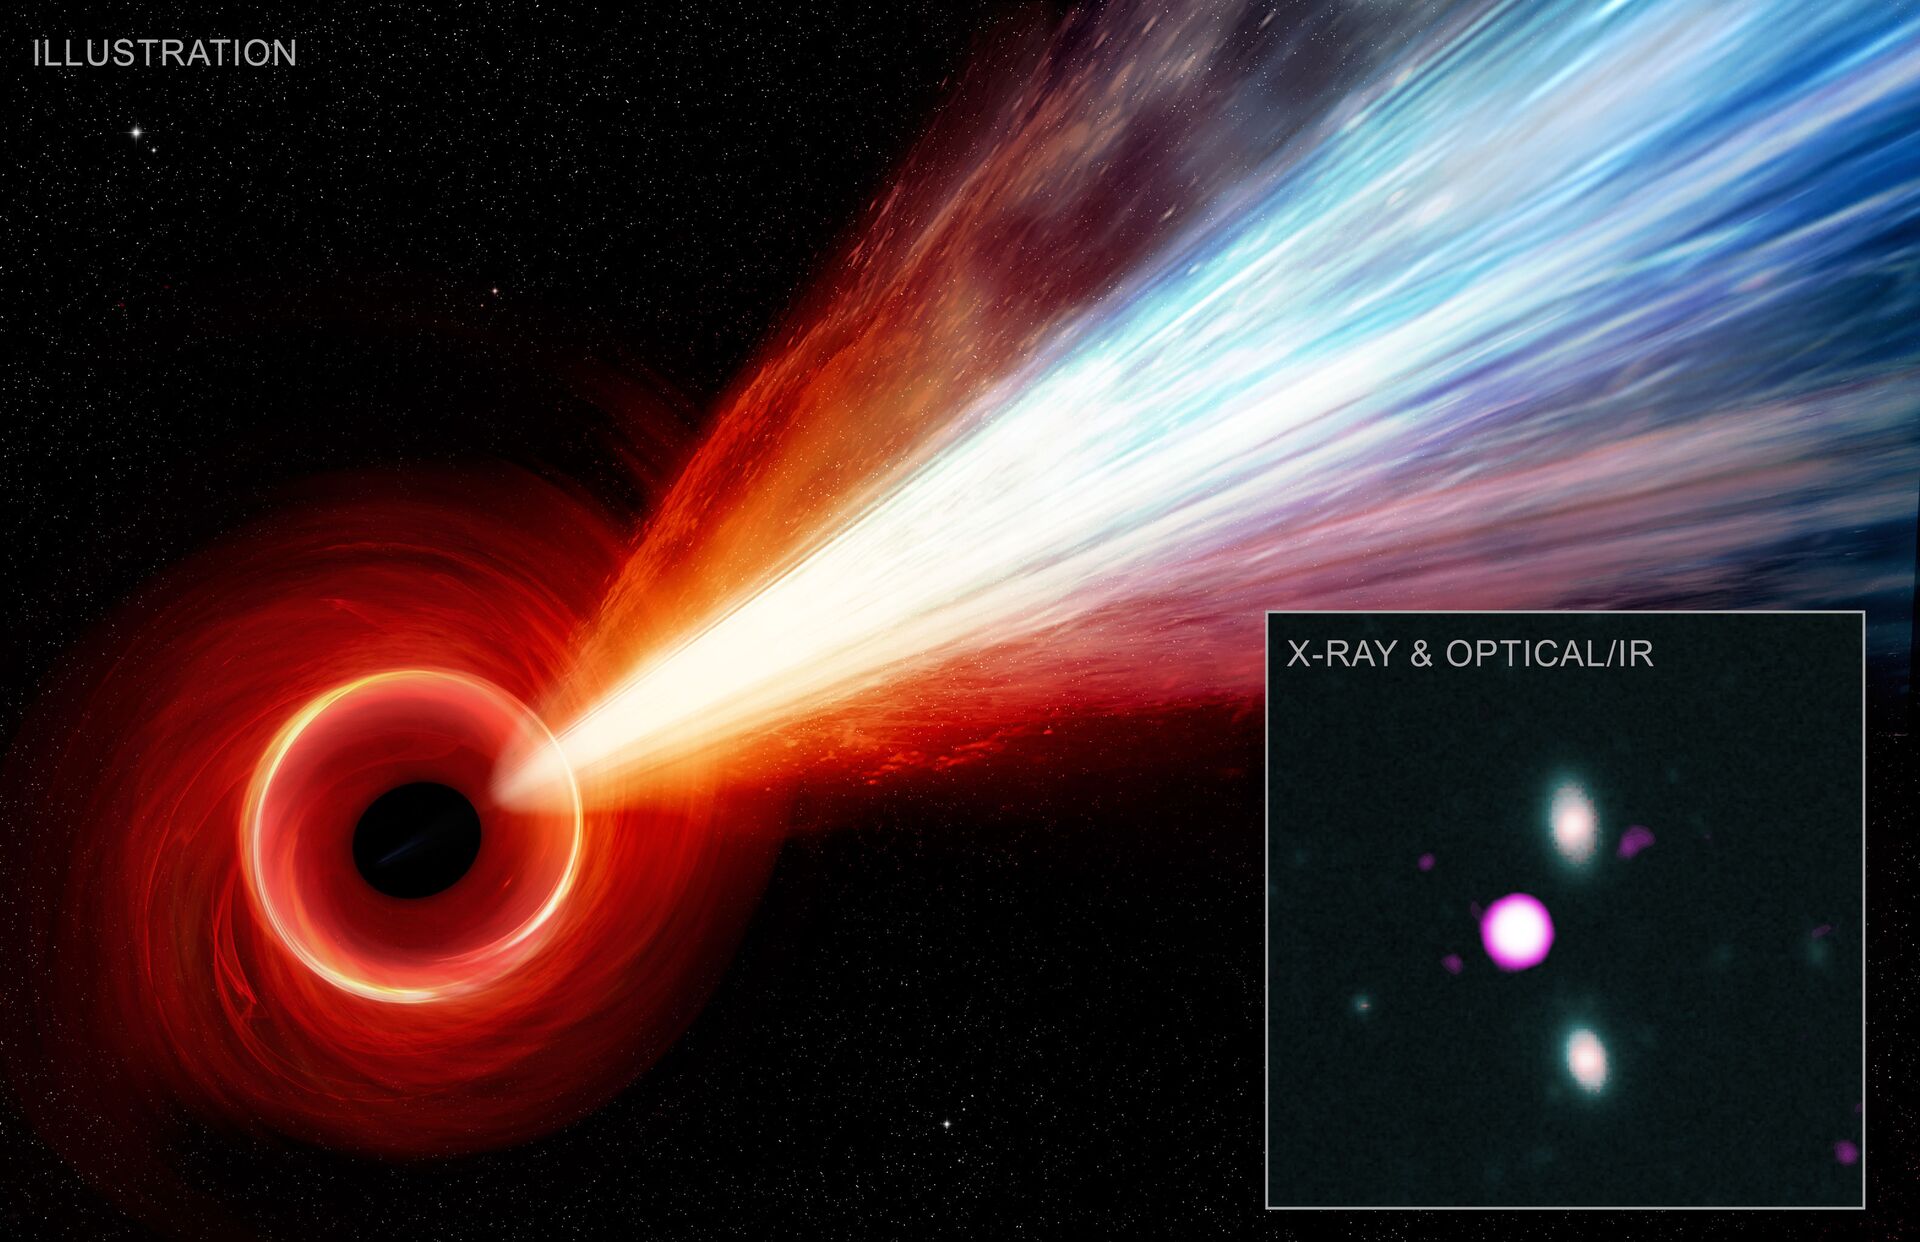 Jato gigante detectado em buraco negro no Universo primitivo pode revelar mistério astronômico - Sputnik Brasil, 1920, 14.03.2021